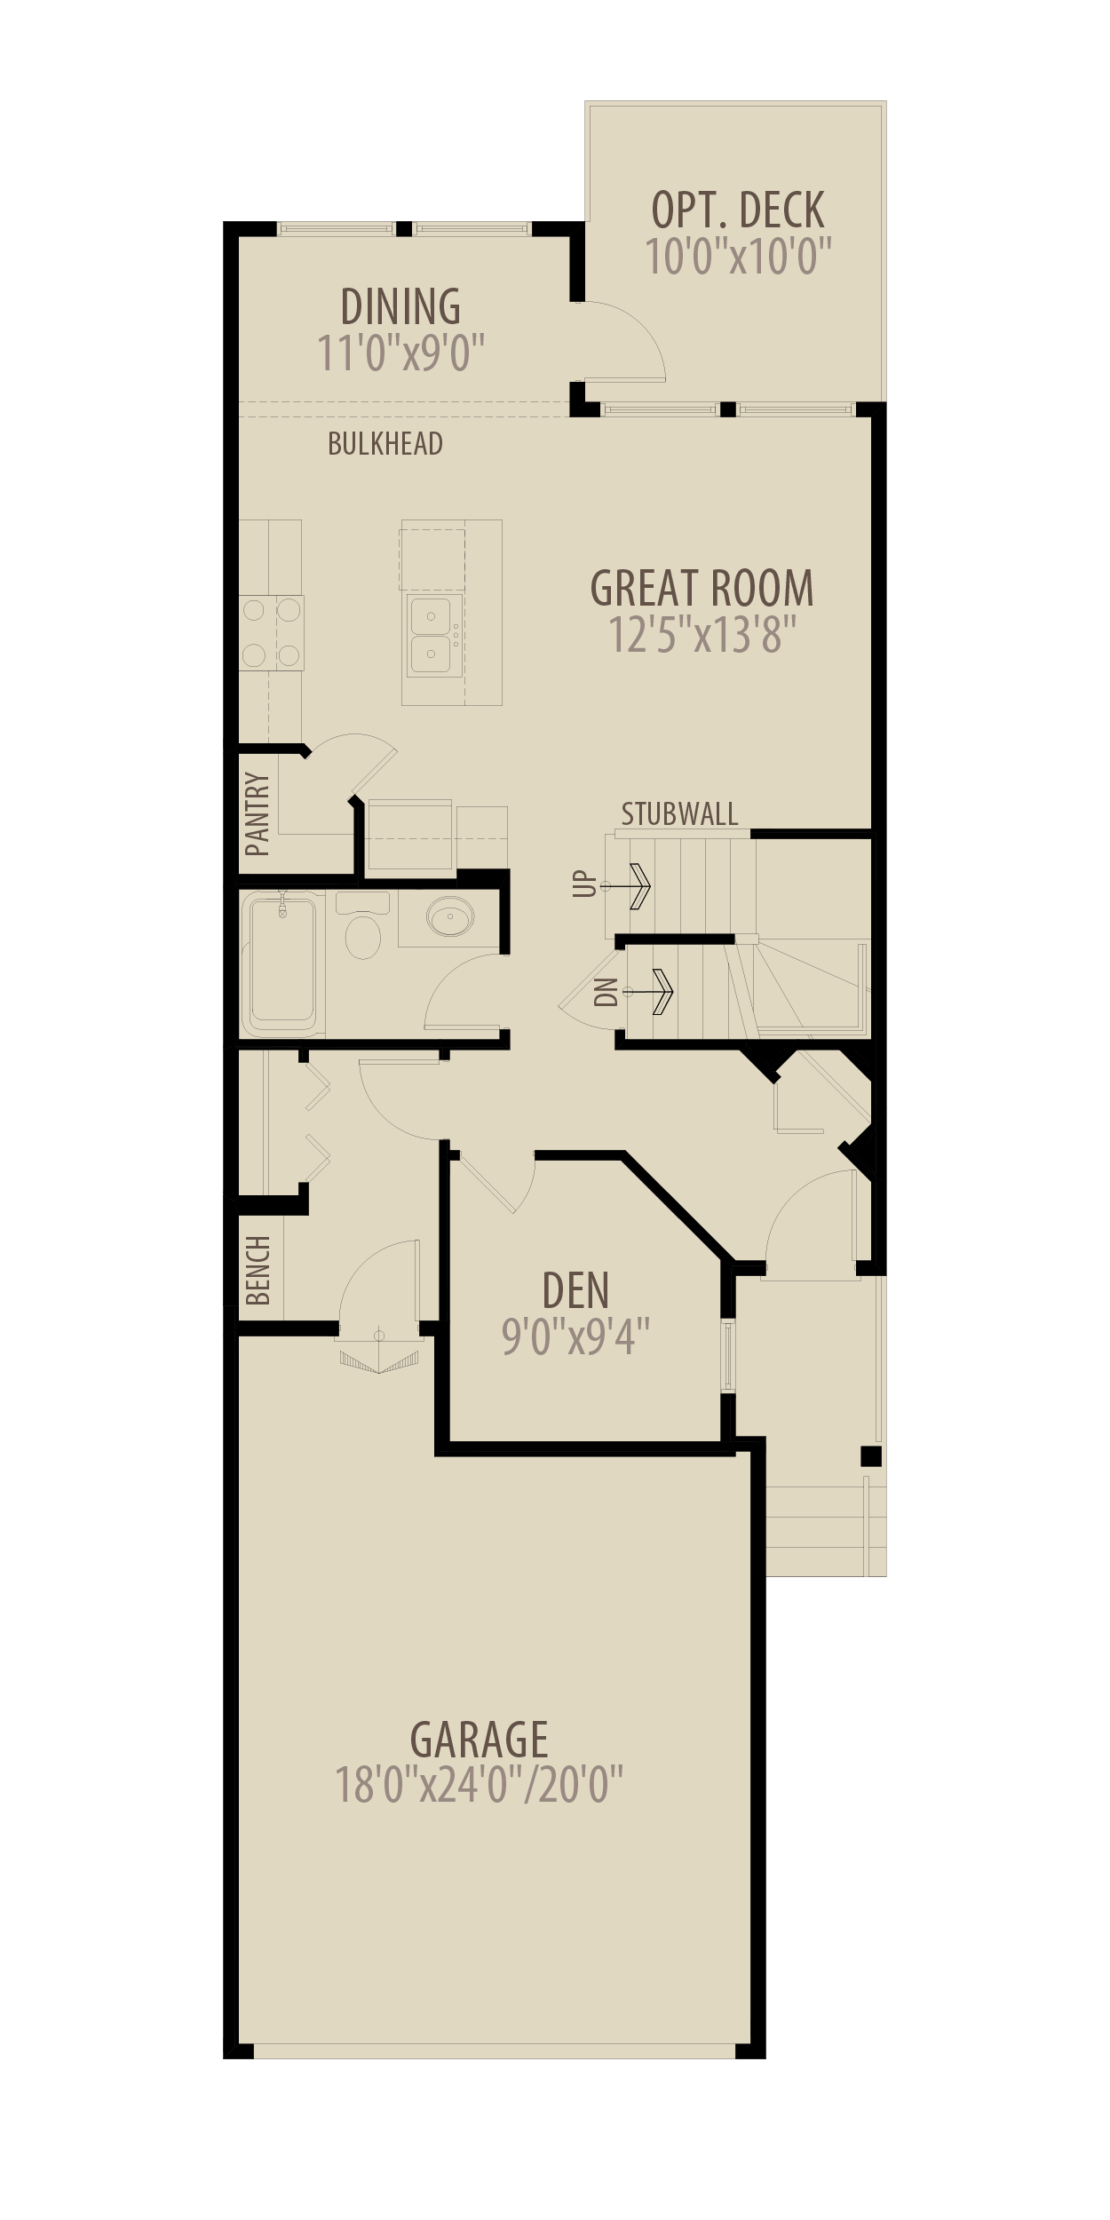 Wexford III Floorplans 103023 Option 3 Main Floor Den adds 40 sq ft